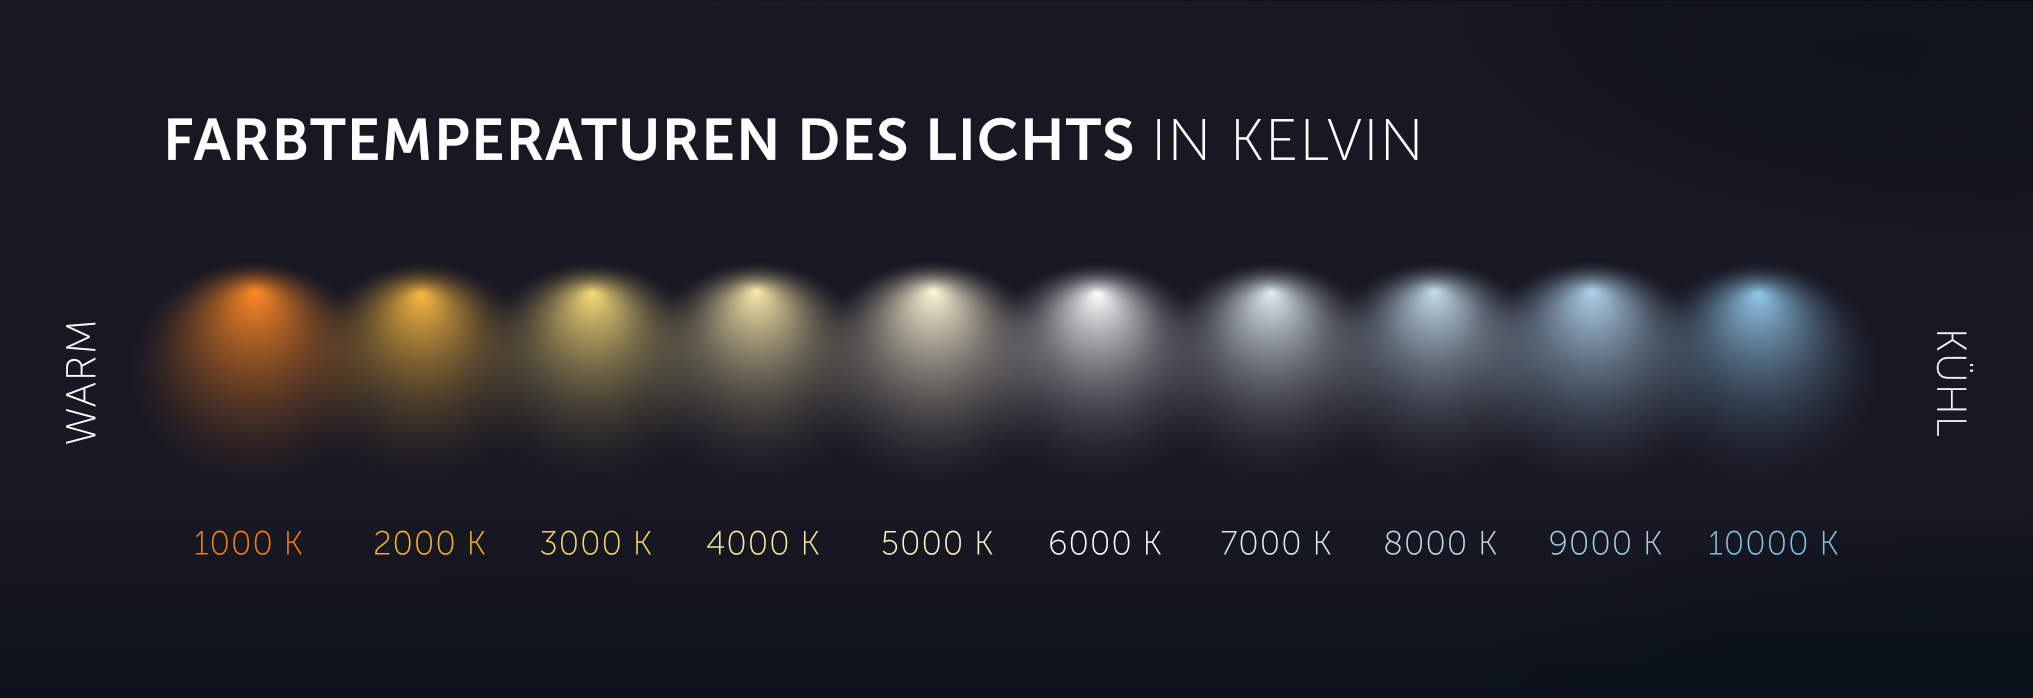 Skala der Farbtemperatur von Licht in Kelvin (K)